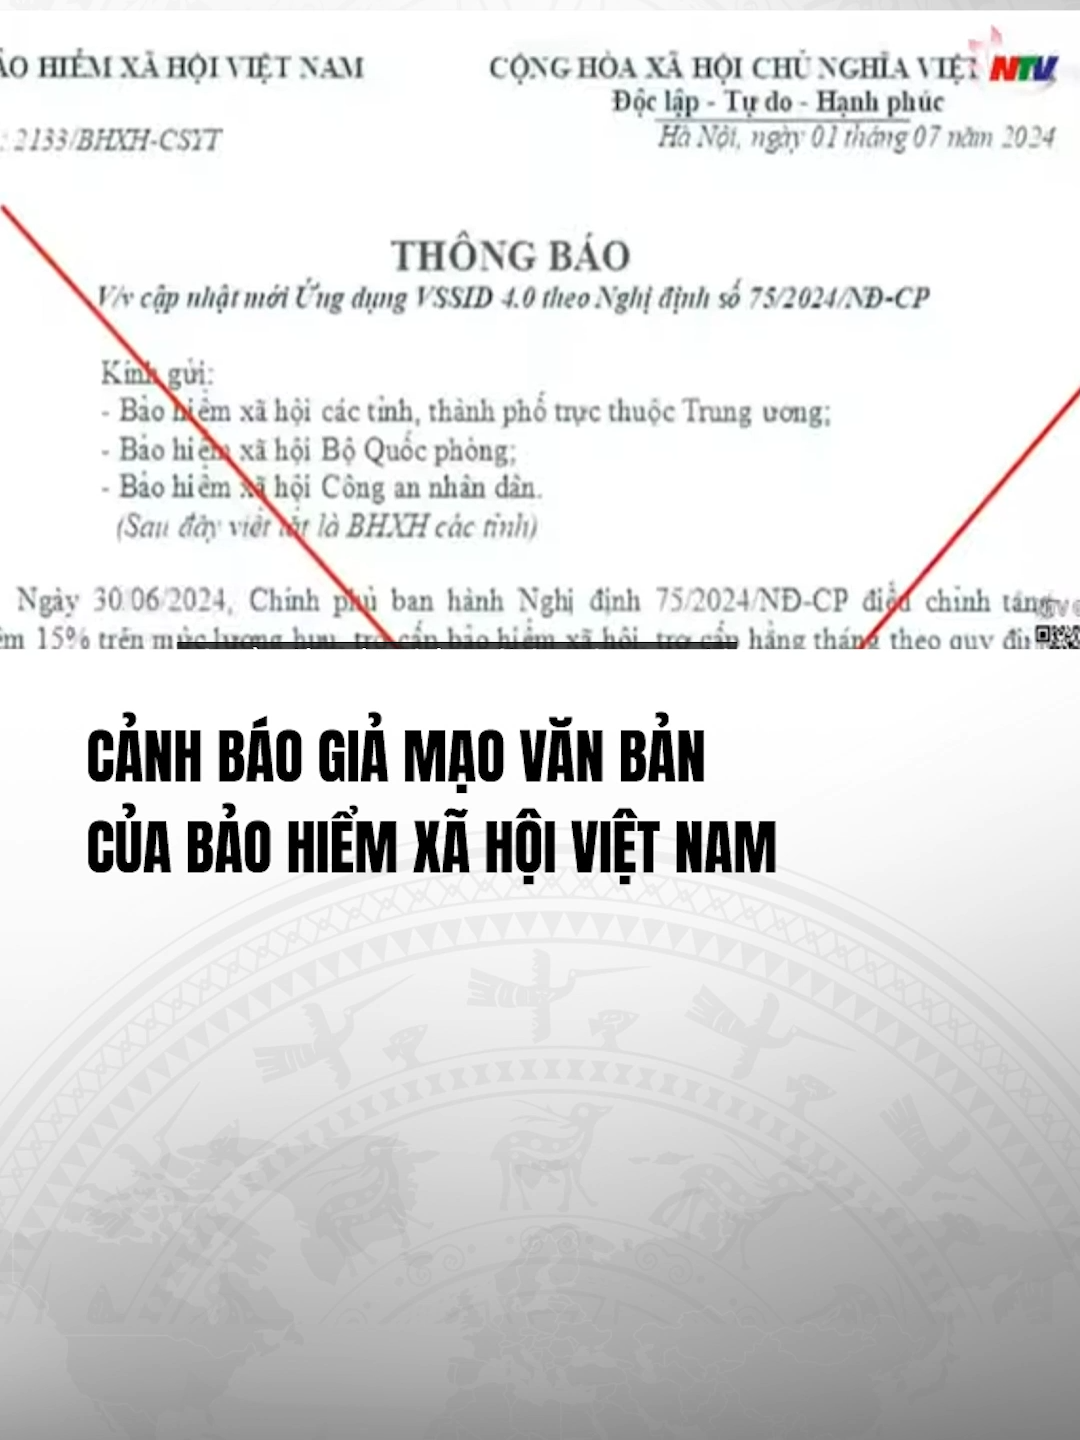 (Cre:NTV) Cảnh báo giả mạo văn bản của Bảo Hiểm Xã Hội Việt Nam #vtvcab #vtvcabtaichinh #master2023bytiktok #baohiemxahoi #tiktok